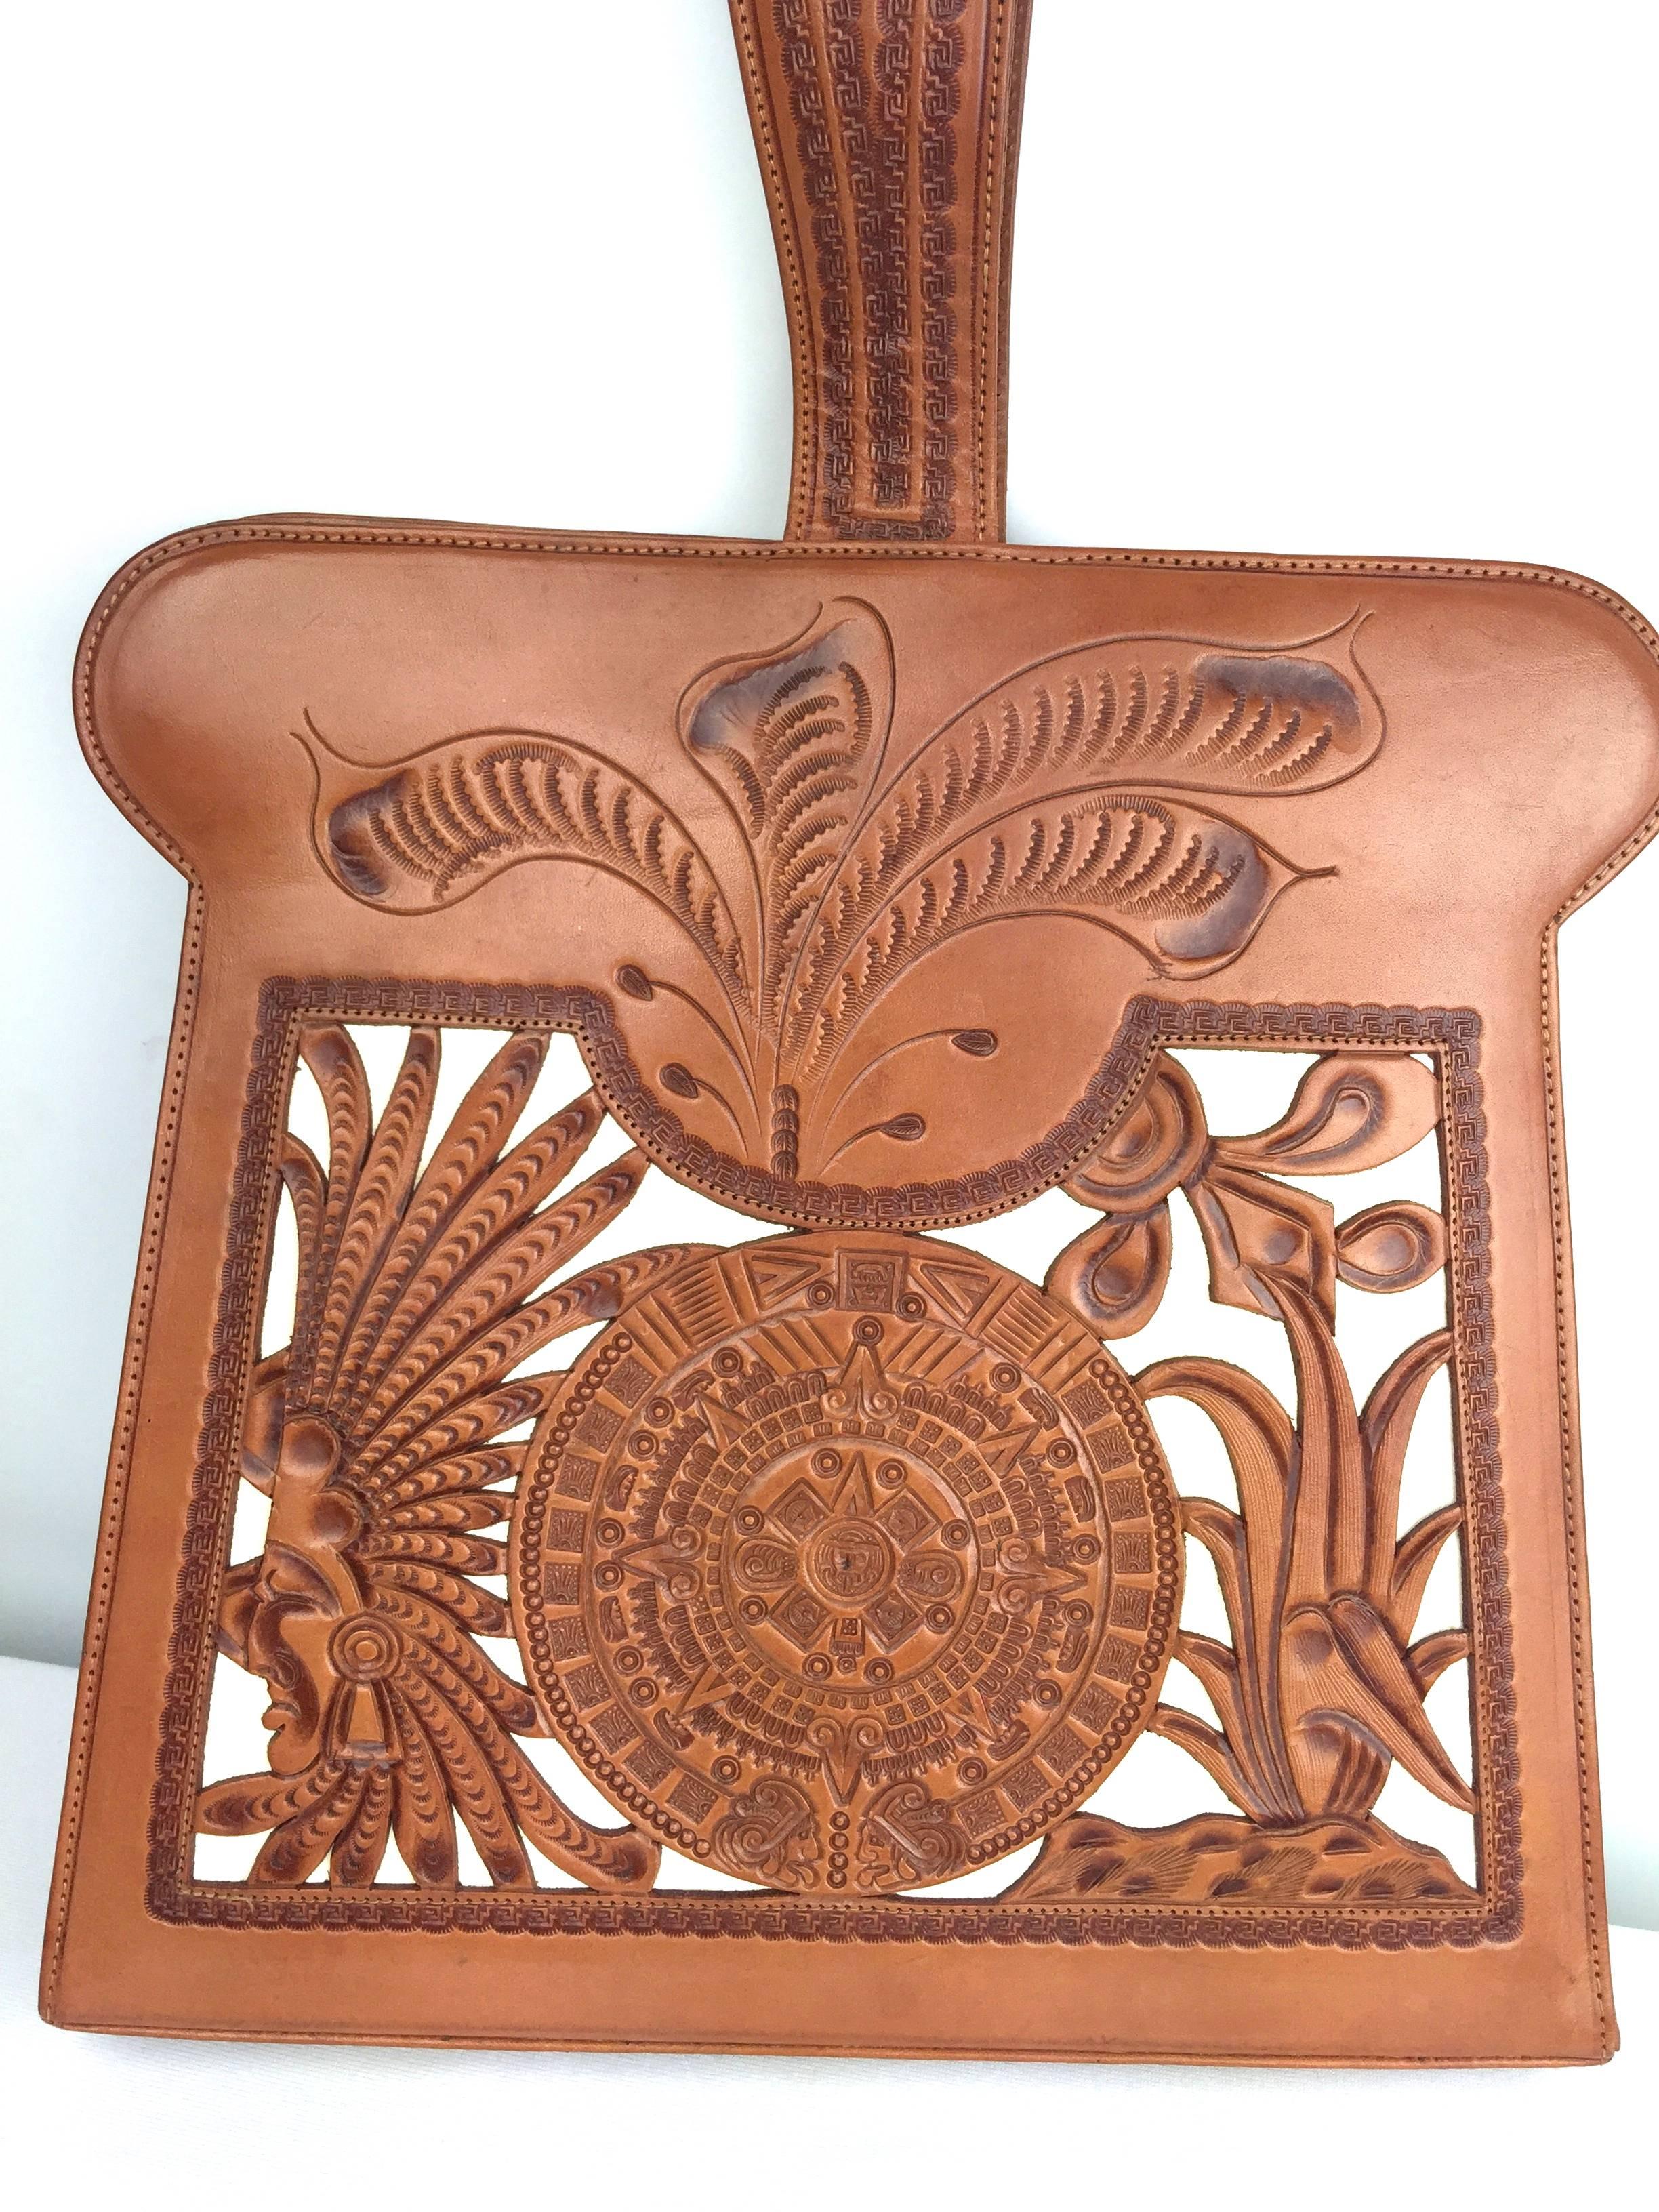 Women's Rare 1950's Tooled Leather Mexican Narrative Handbag. 3-D Design.